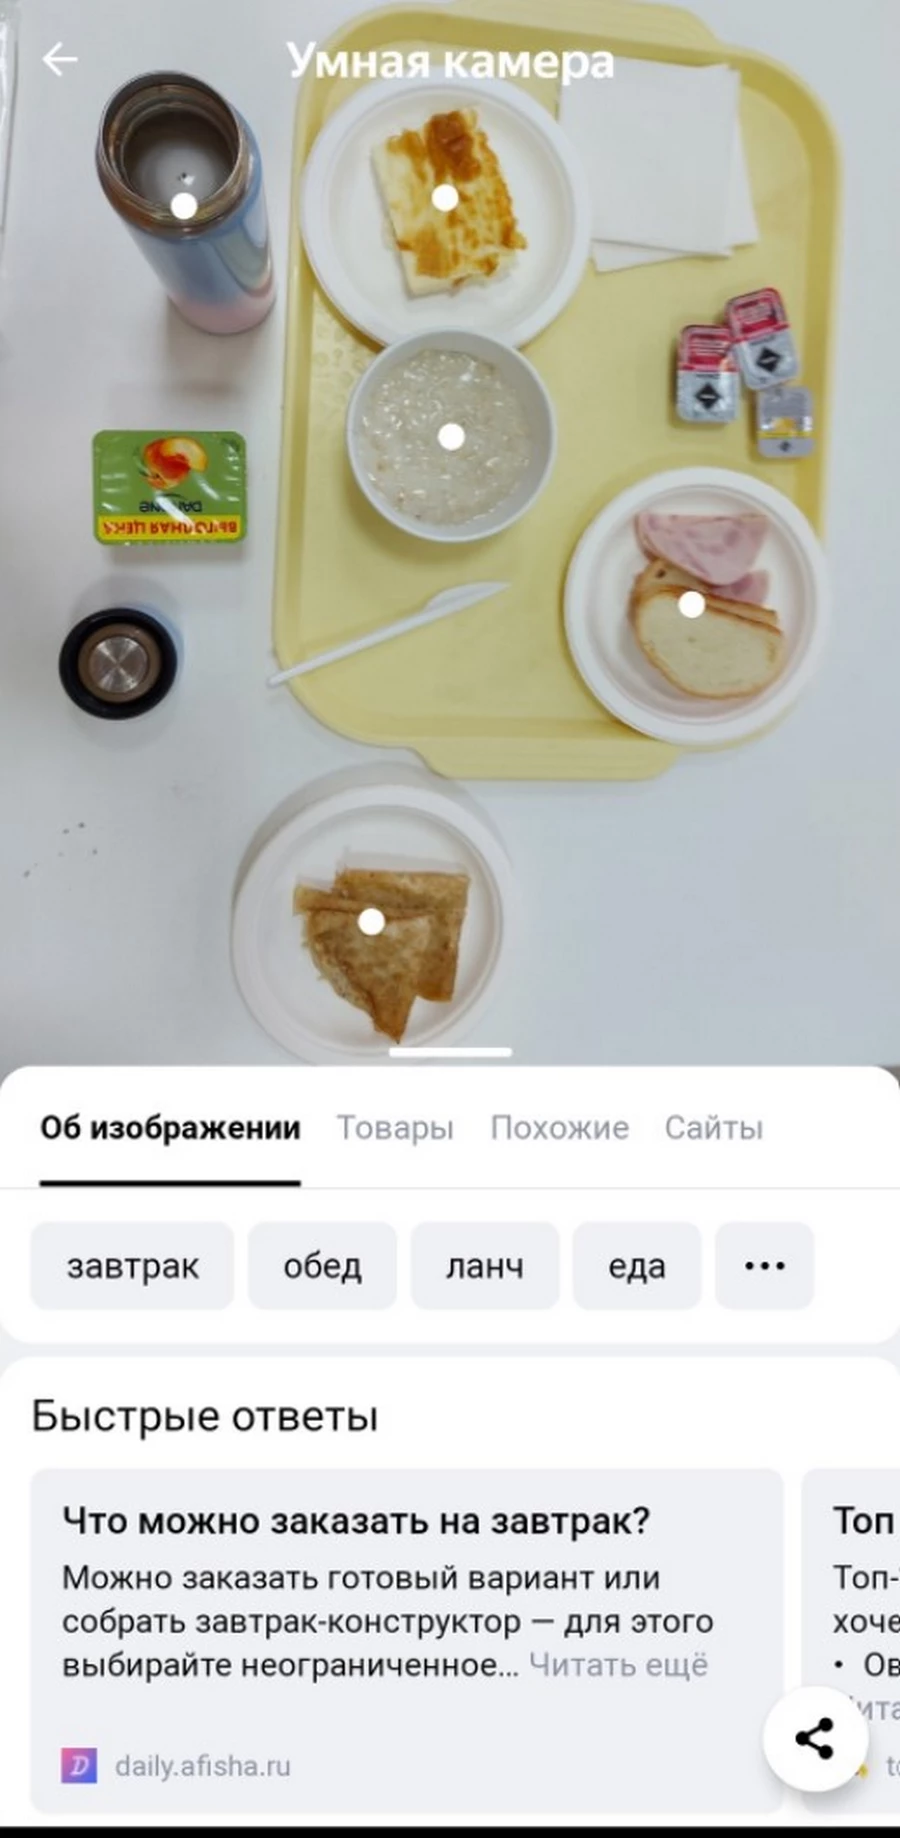 Сколько калорий у вас на тарелке, что за марка машины и как решить уравнение – «Яндекс» обещает определять это по фото